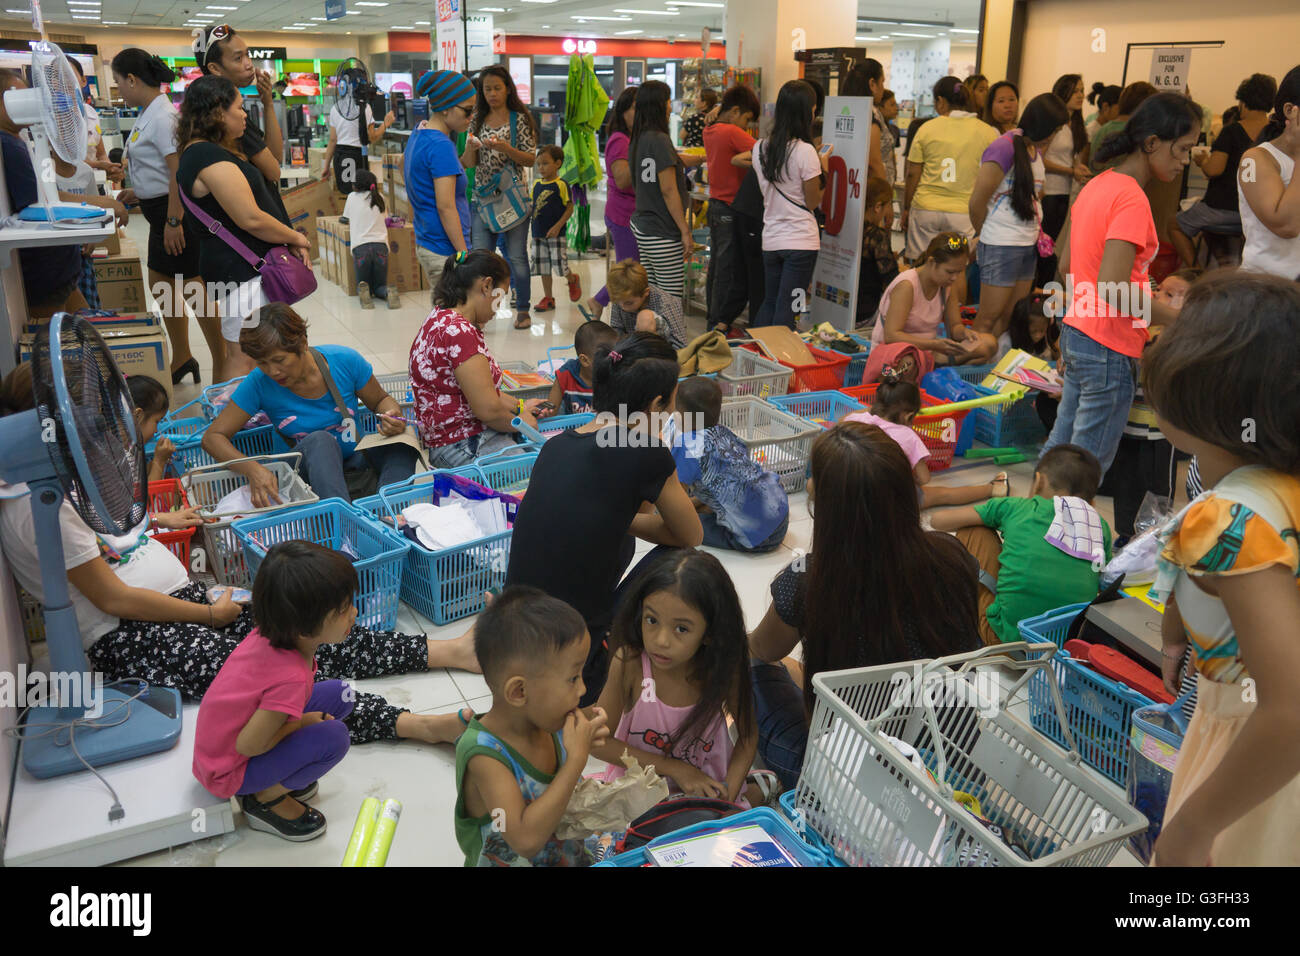 Centre Ayala, à Cebu, aux Philippines. 10 Juin 2016.On estime que 25 millions d'élèves dans les Philippines vont retourner à l'école le lundi 13 juin après leur pause de l'été.Le week-end avant le lundi a vu les parents et les enfants ensemble d'achats de dernière minute, l'achat effréné,en profitant des nombreuses ventes en magasins. Credit : gallerie2/Alamy Live News Banque D'Images